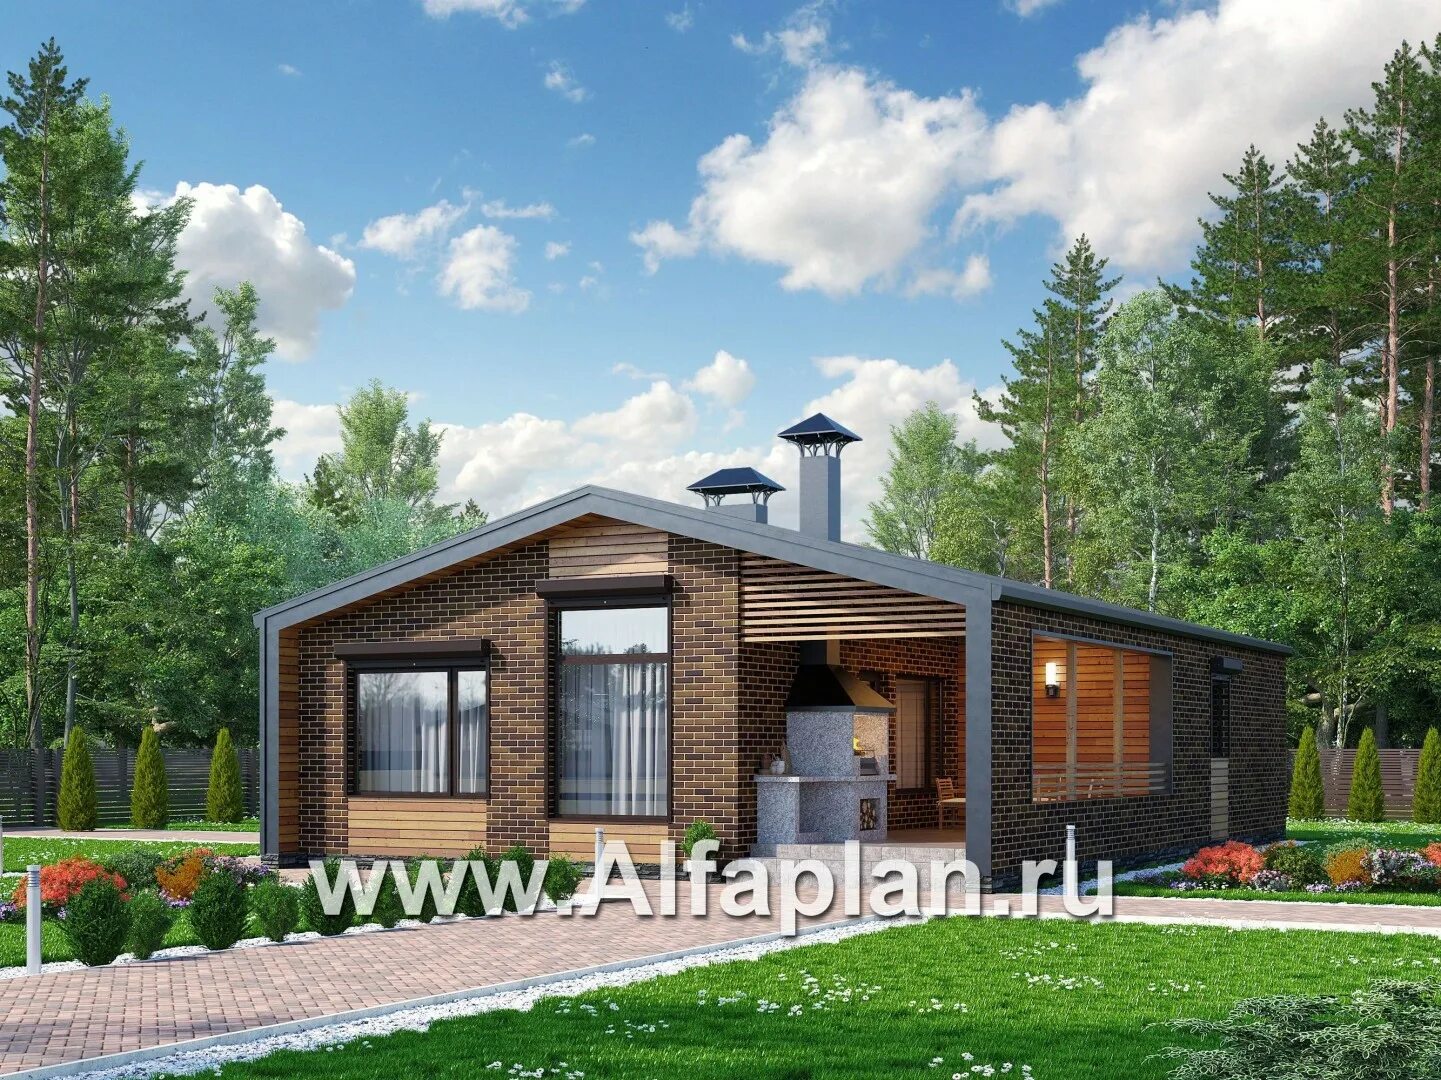 Alfaplan ru проекты домов одноэтажных. Альфаплан g111. Дизайн одноэтажного дома. Одноэтажный дом Альфаплан.